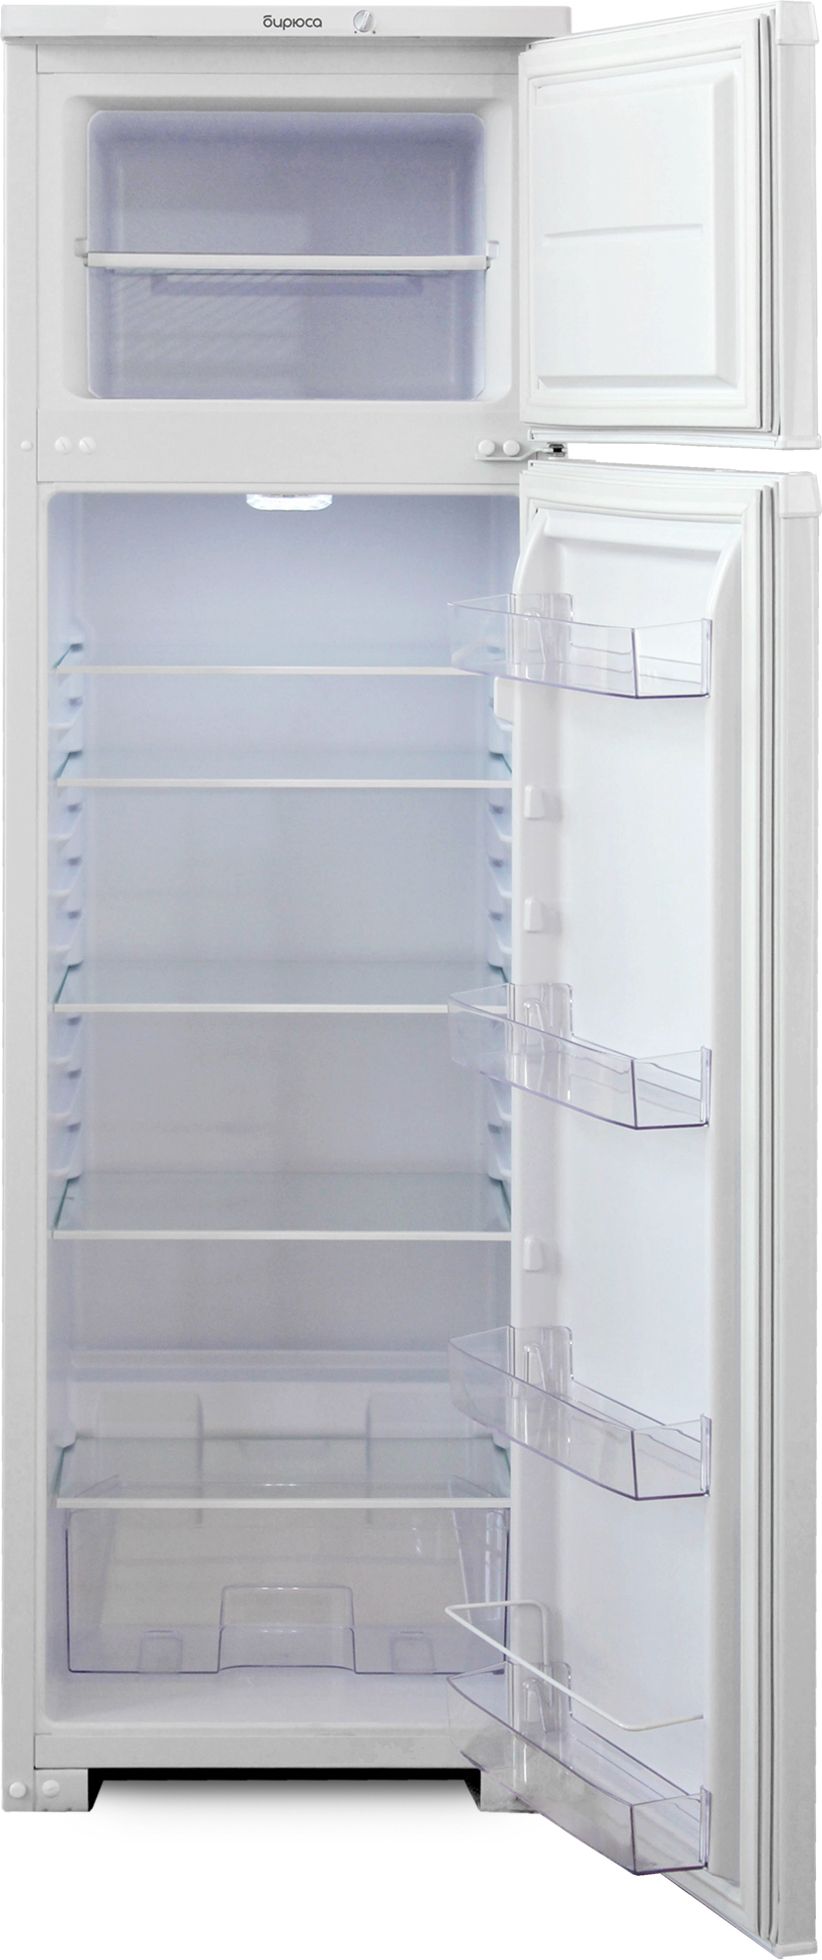 холодильник бирюса 124, купить в Красноярске холодильник бирюса 124,  купить в Красноярске дешево холодильник бирюса 124, купить в Красноярске минимальной цене холодильник бирюса 124